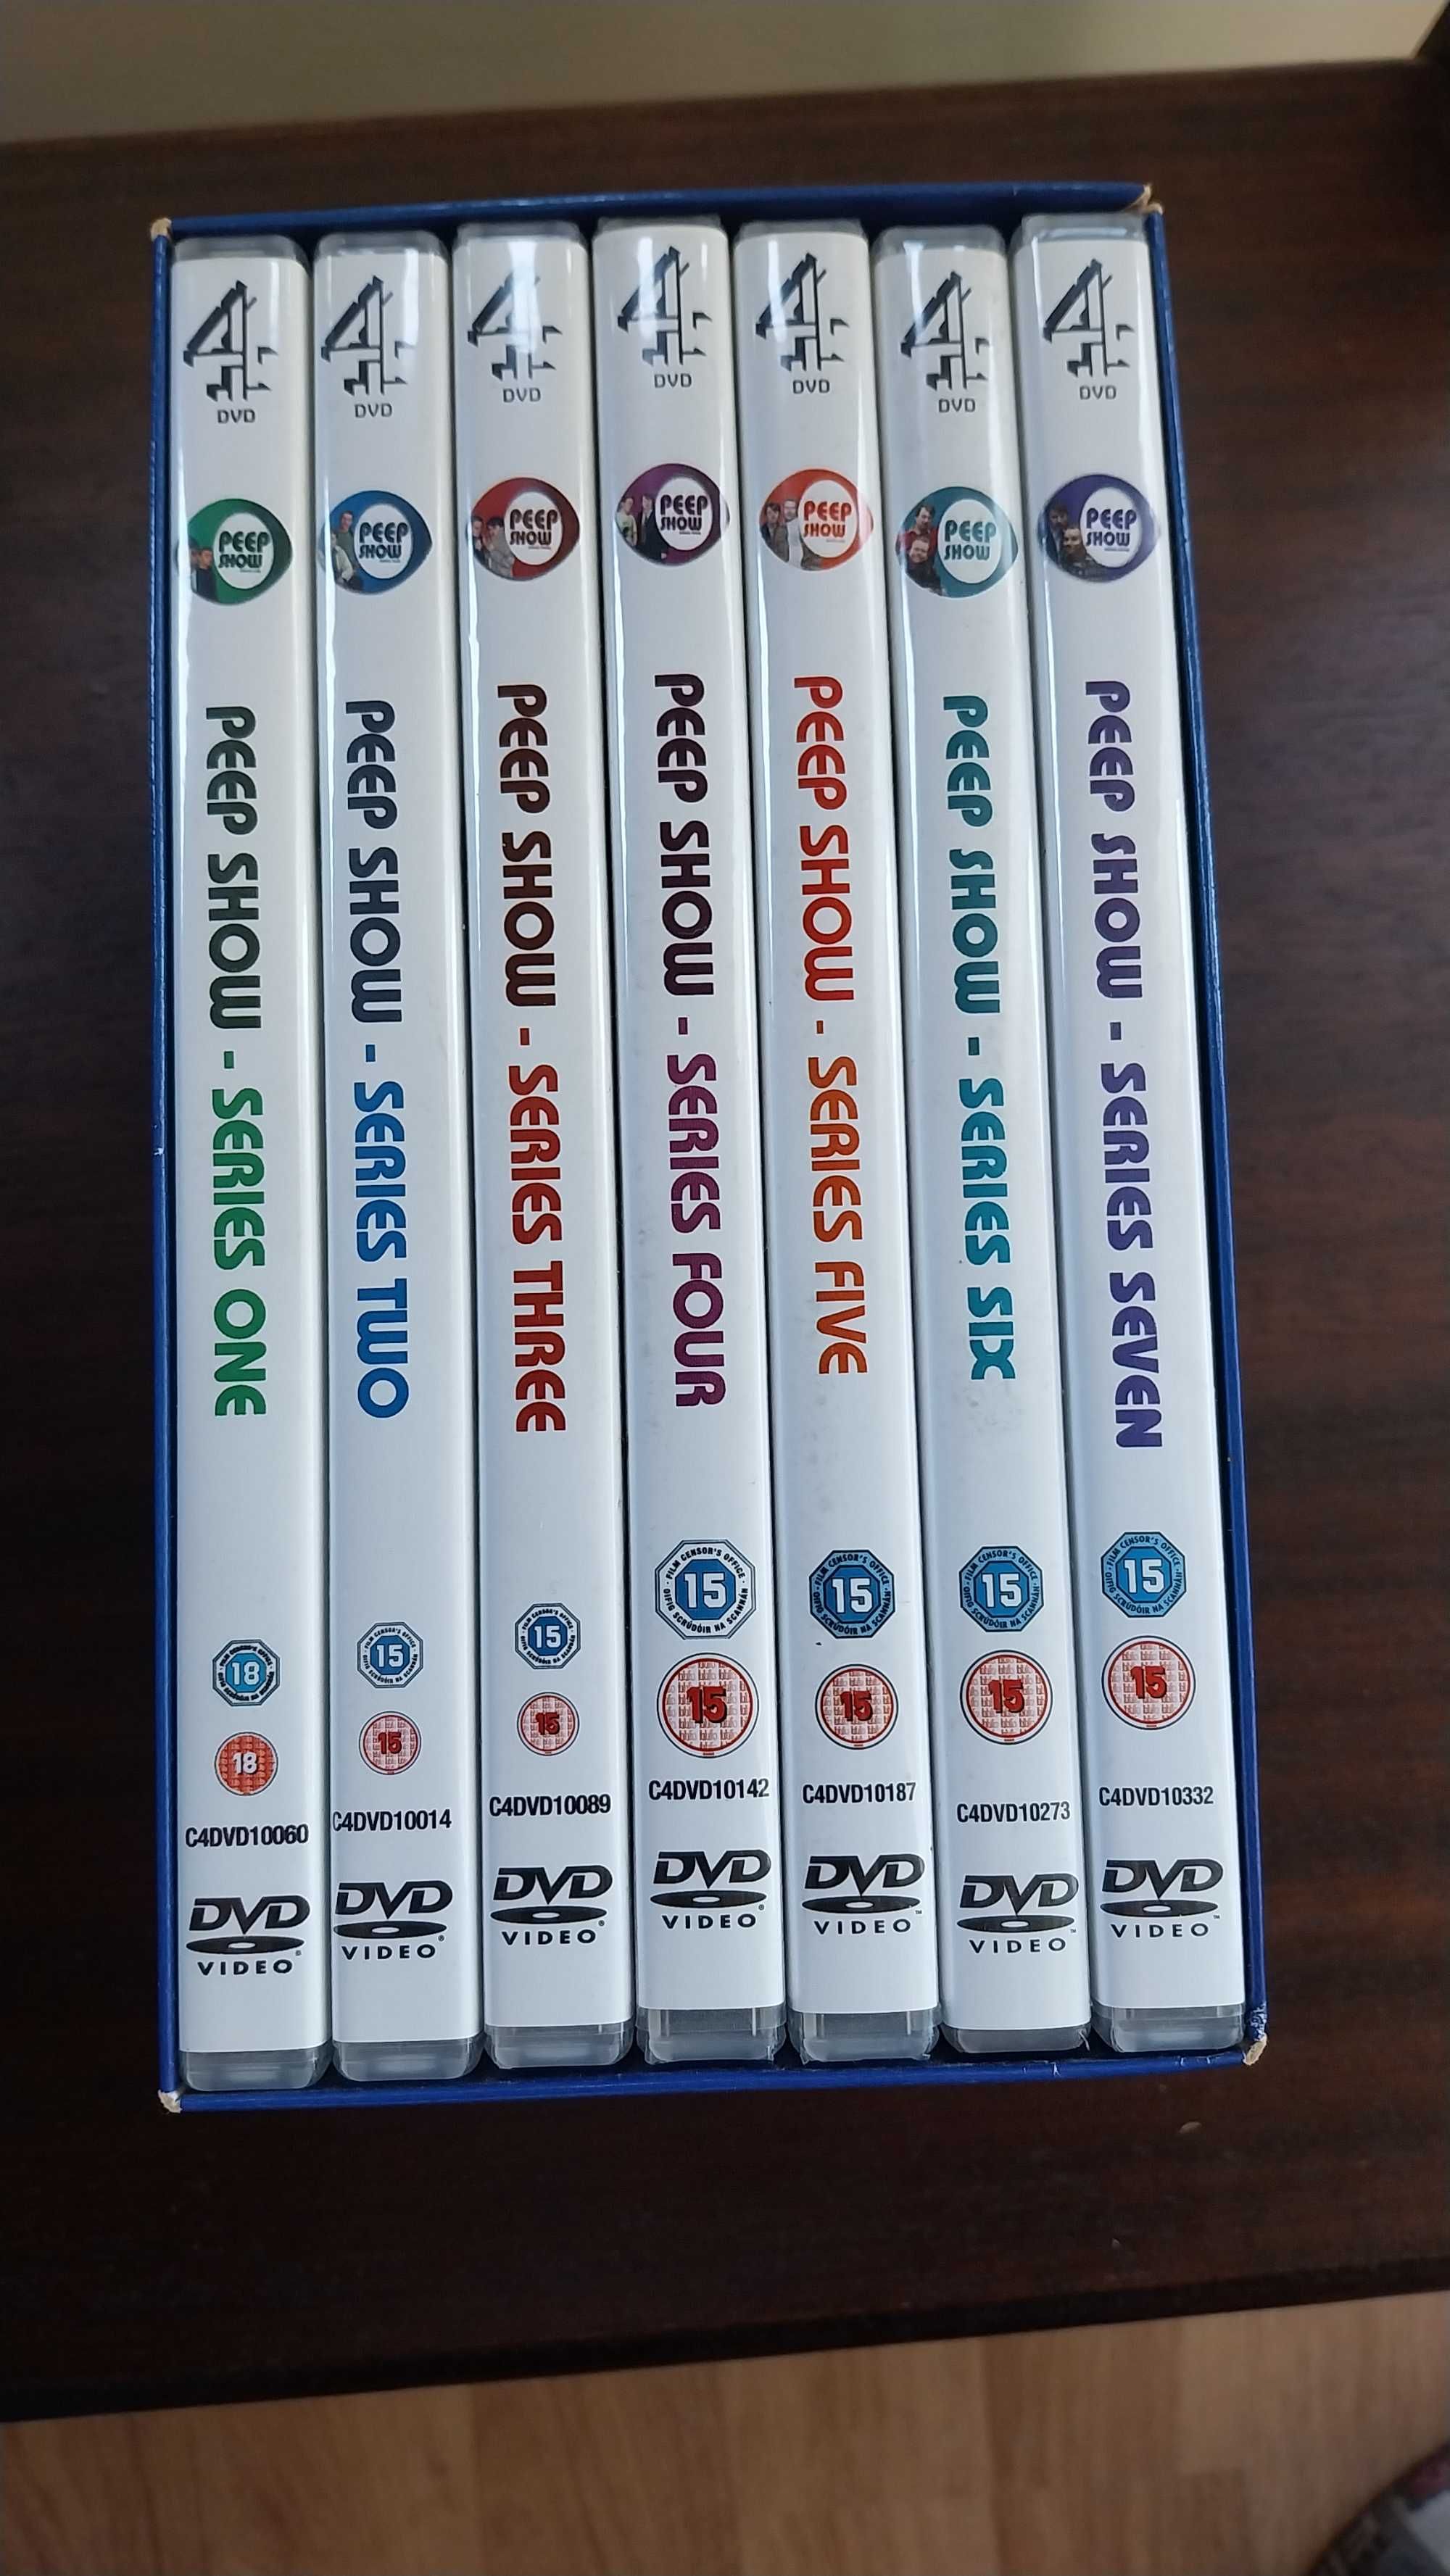 DVDs Peep Show em inglês